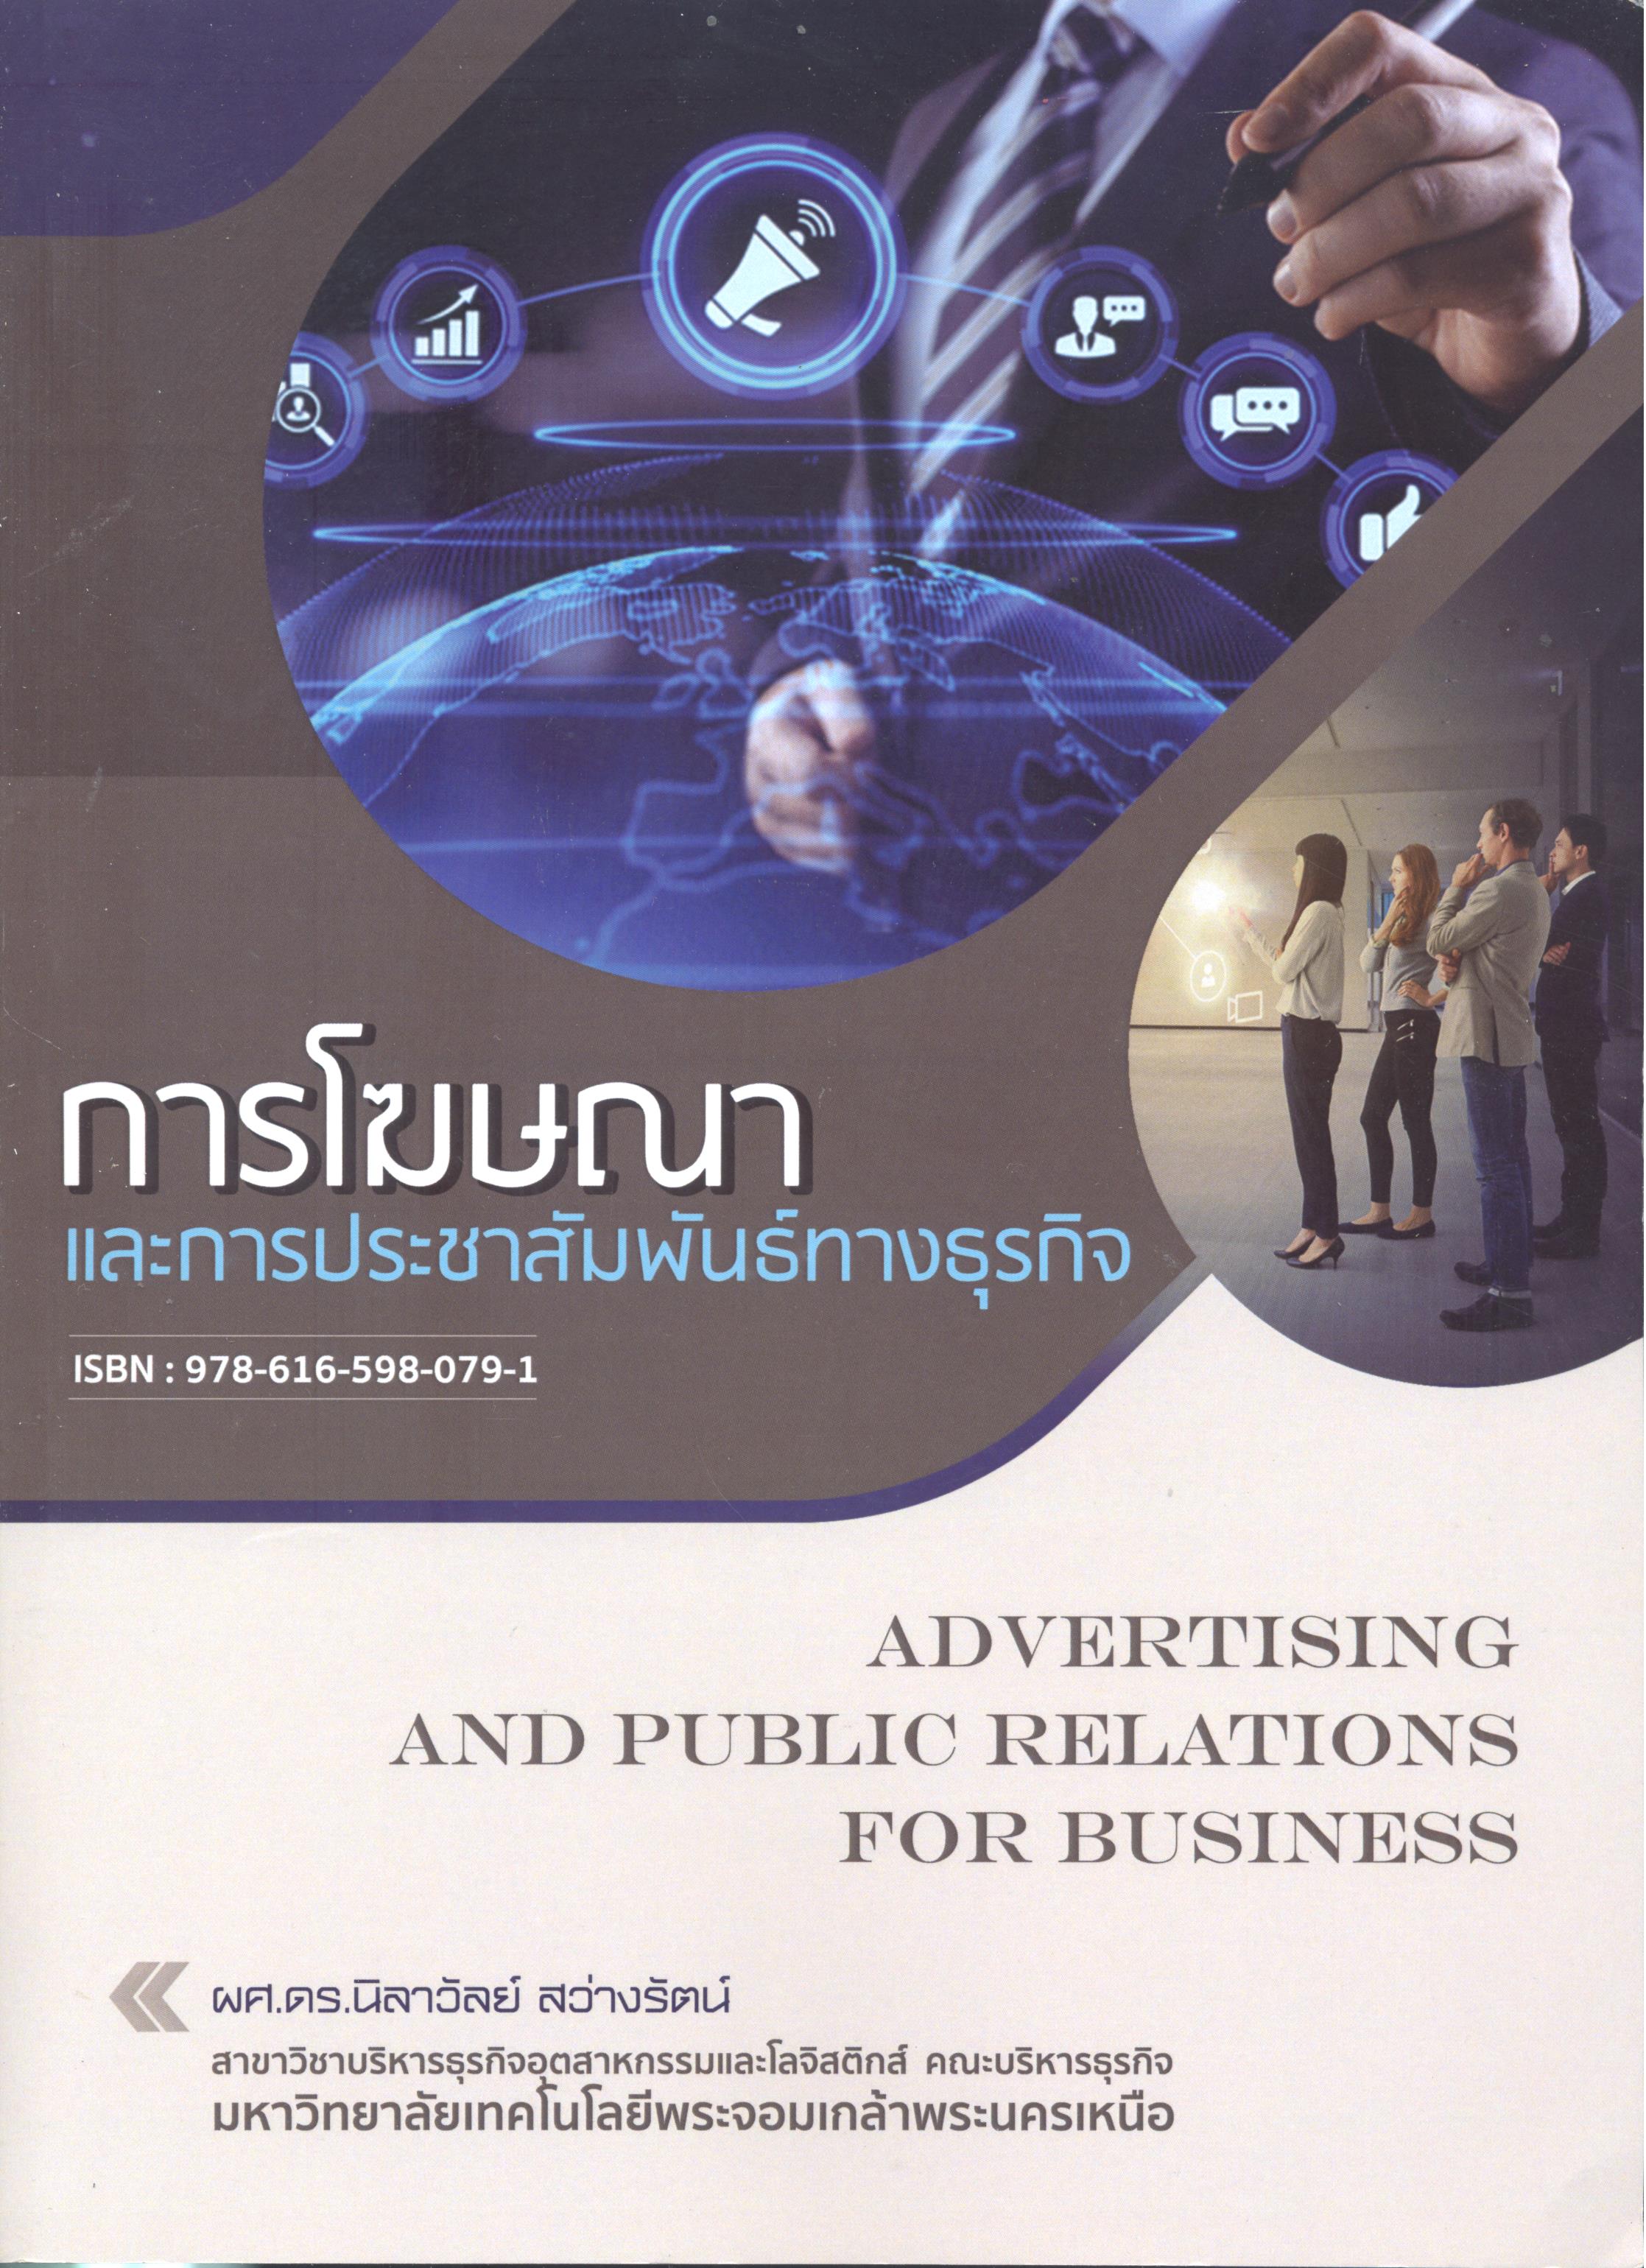 การโฆษณาและการประชาสัมพันธ์ทางธุรกิจ